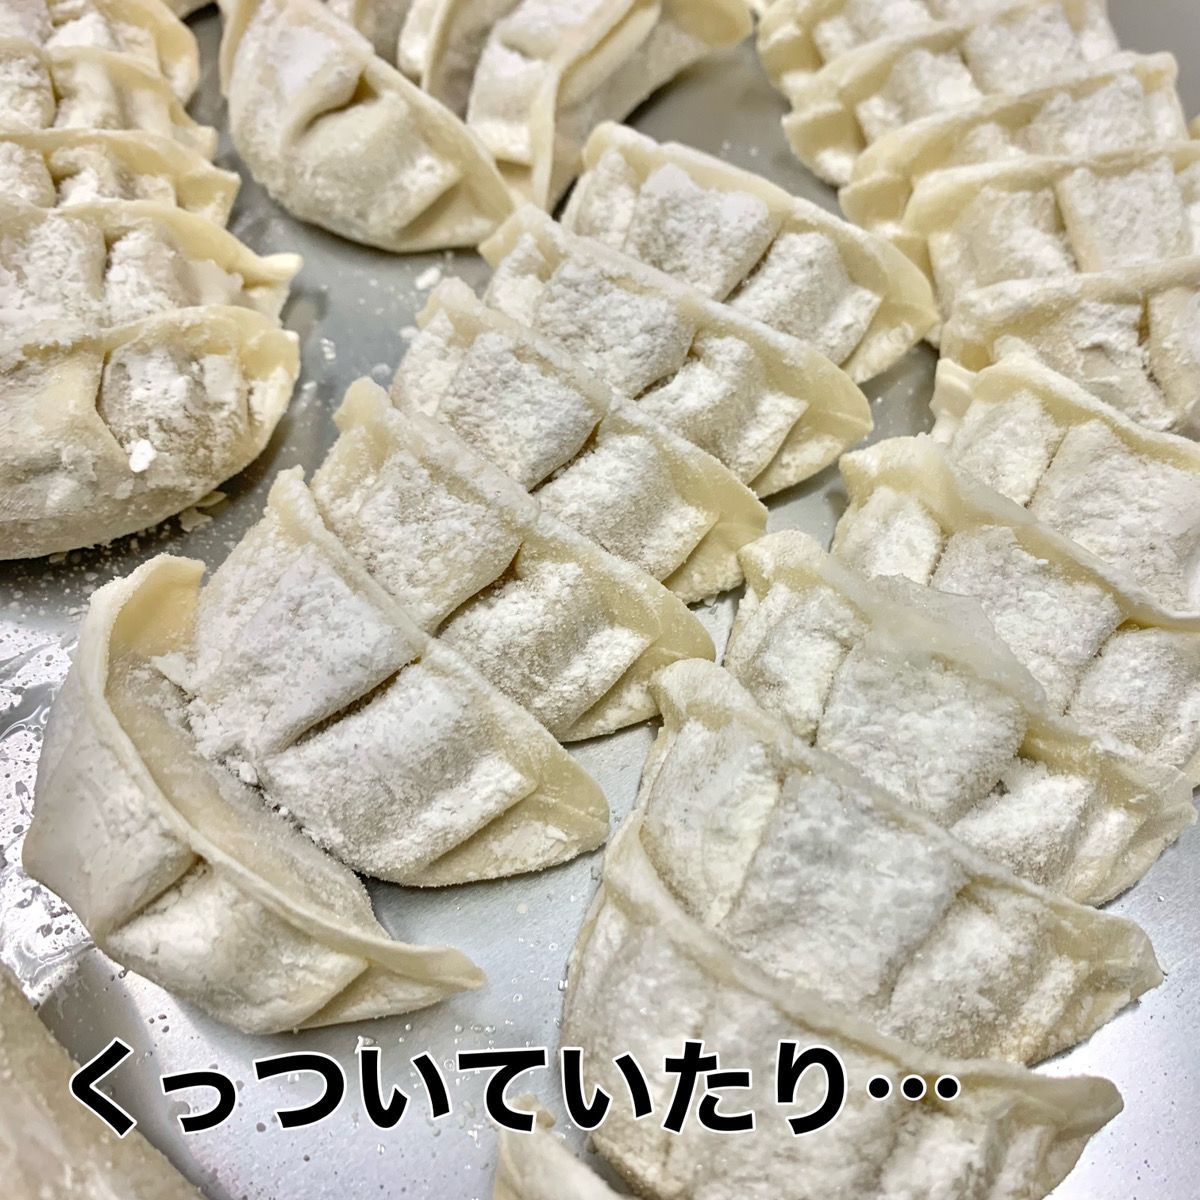 数量限定 訳あり 100個入 神戸餃子楼 工場直販 冷凍生餃子 生姜 鍋-9